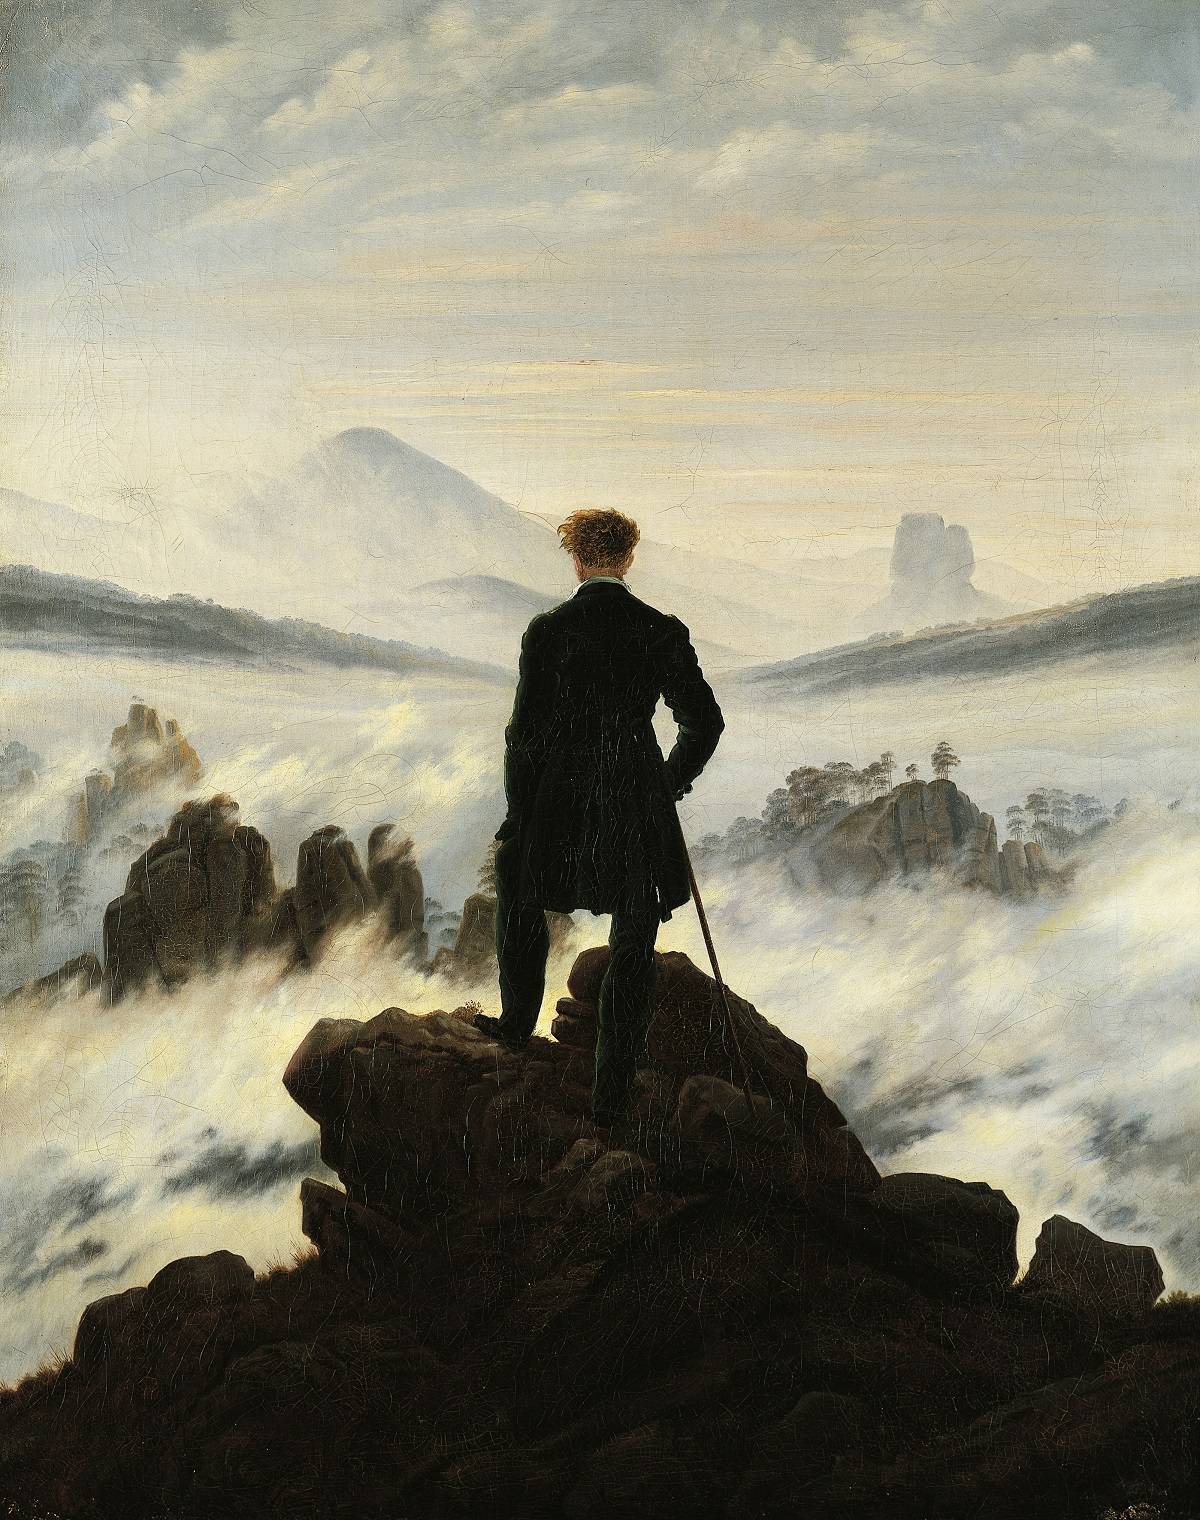 Wędrowiec nad morzem mgły, Caspar David Friedrich